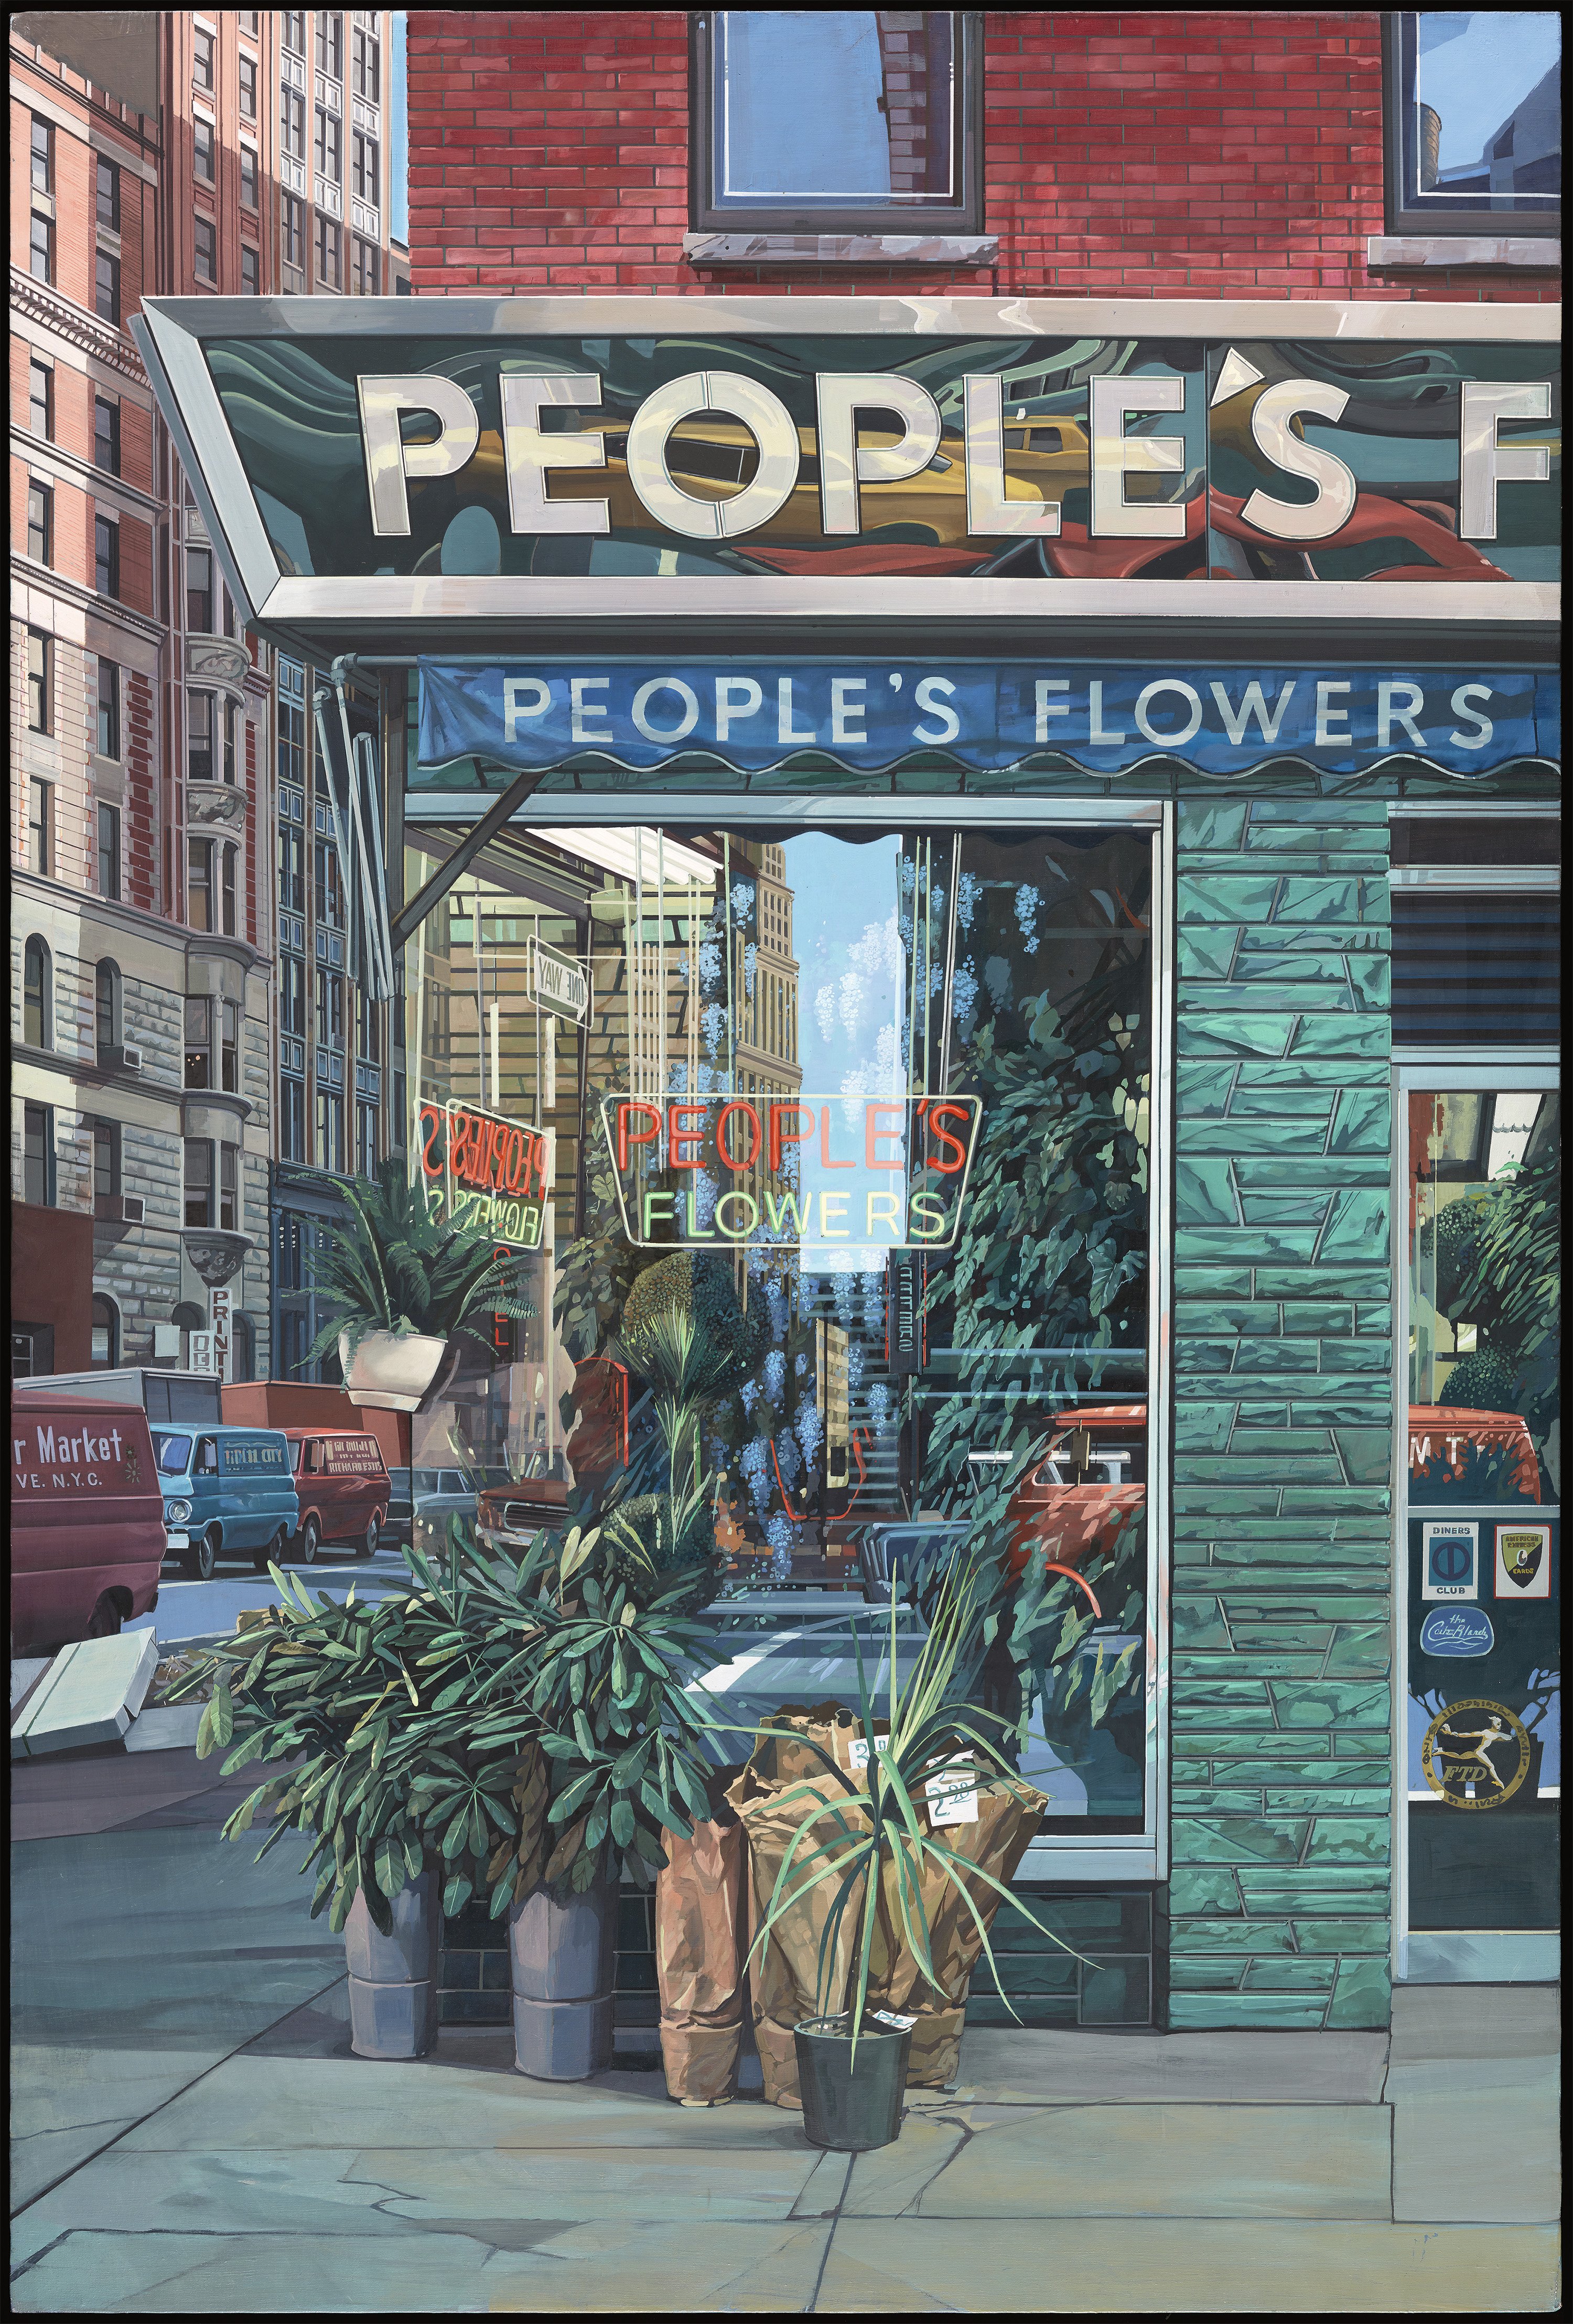 People's Flowers. People's Flowers, 1971